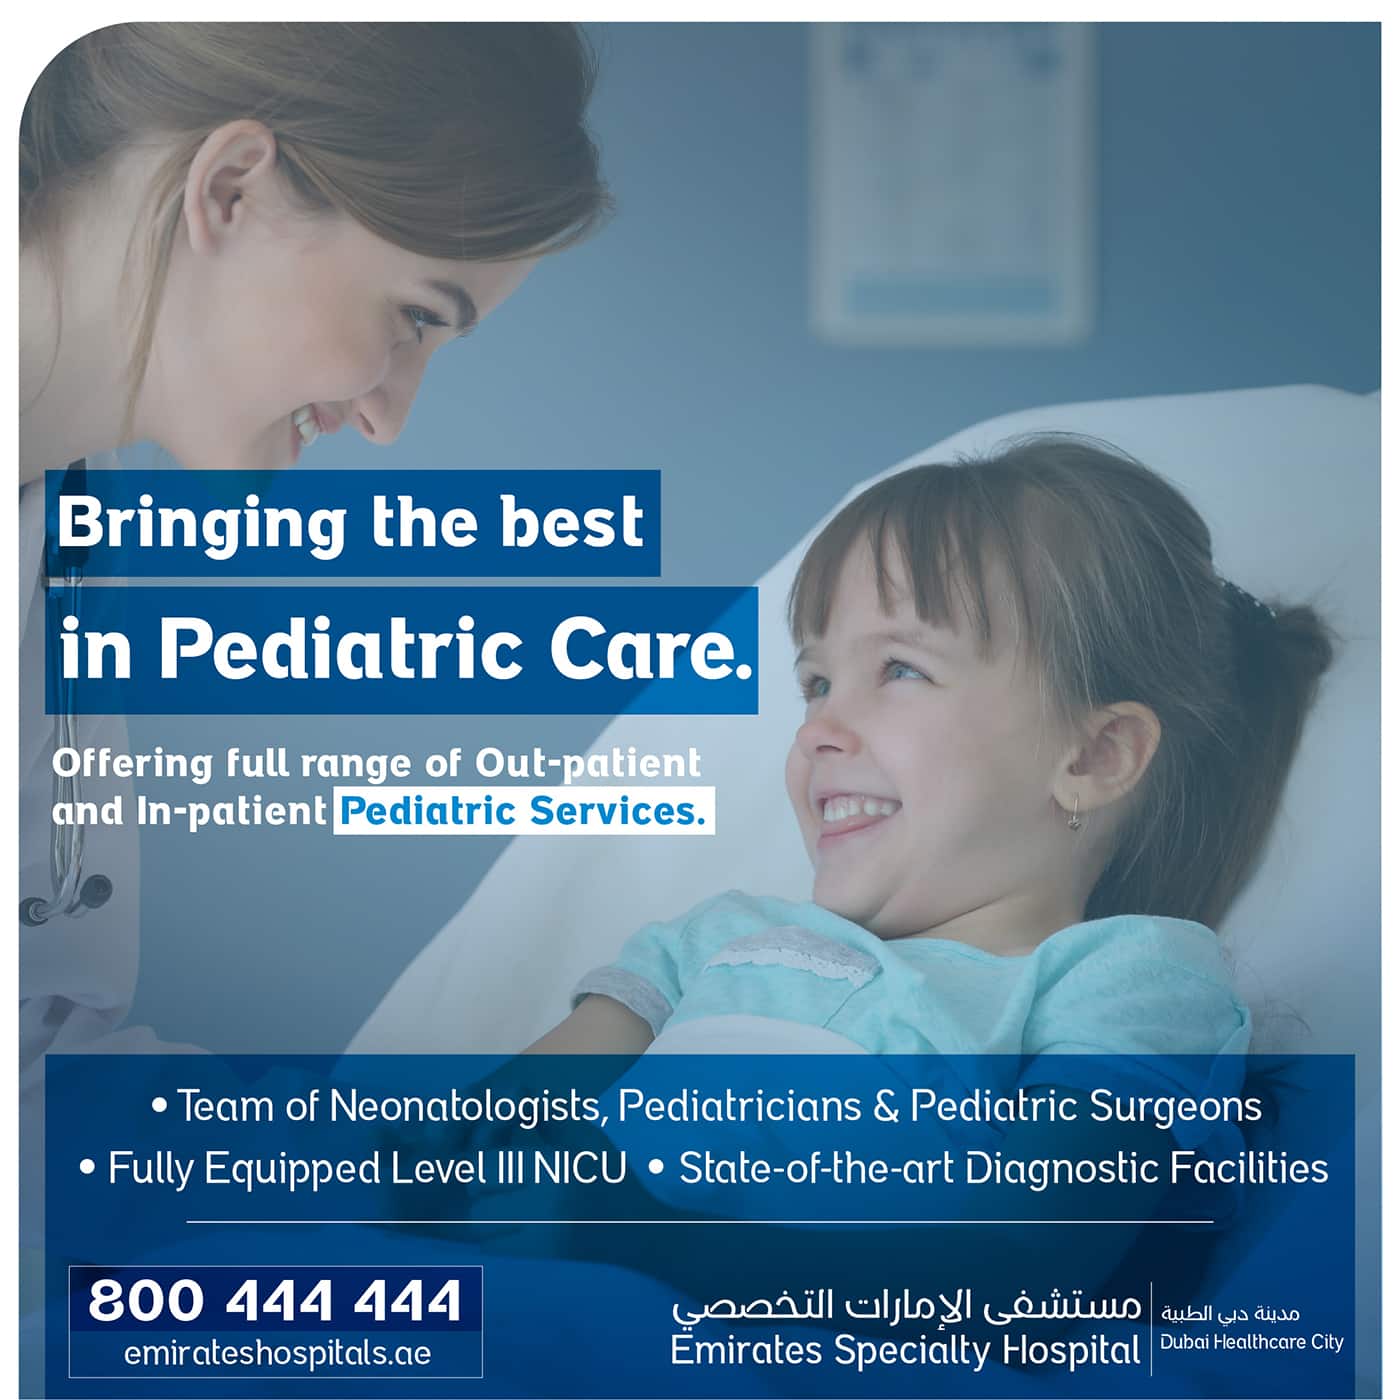 Best Pediatric Care in UAE - Emirates Specialty Hospital, Dubai Healthcare City